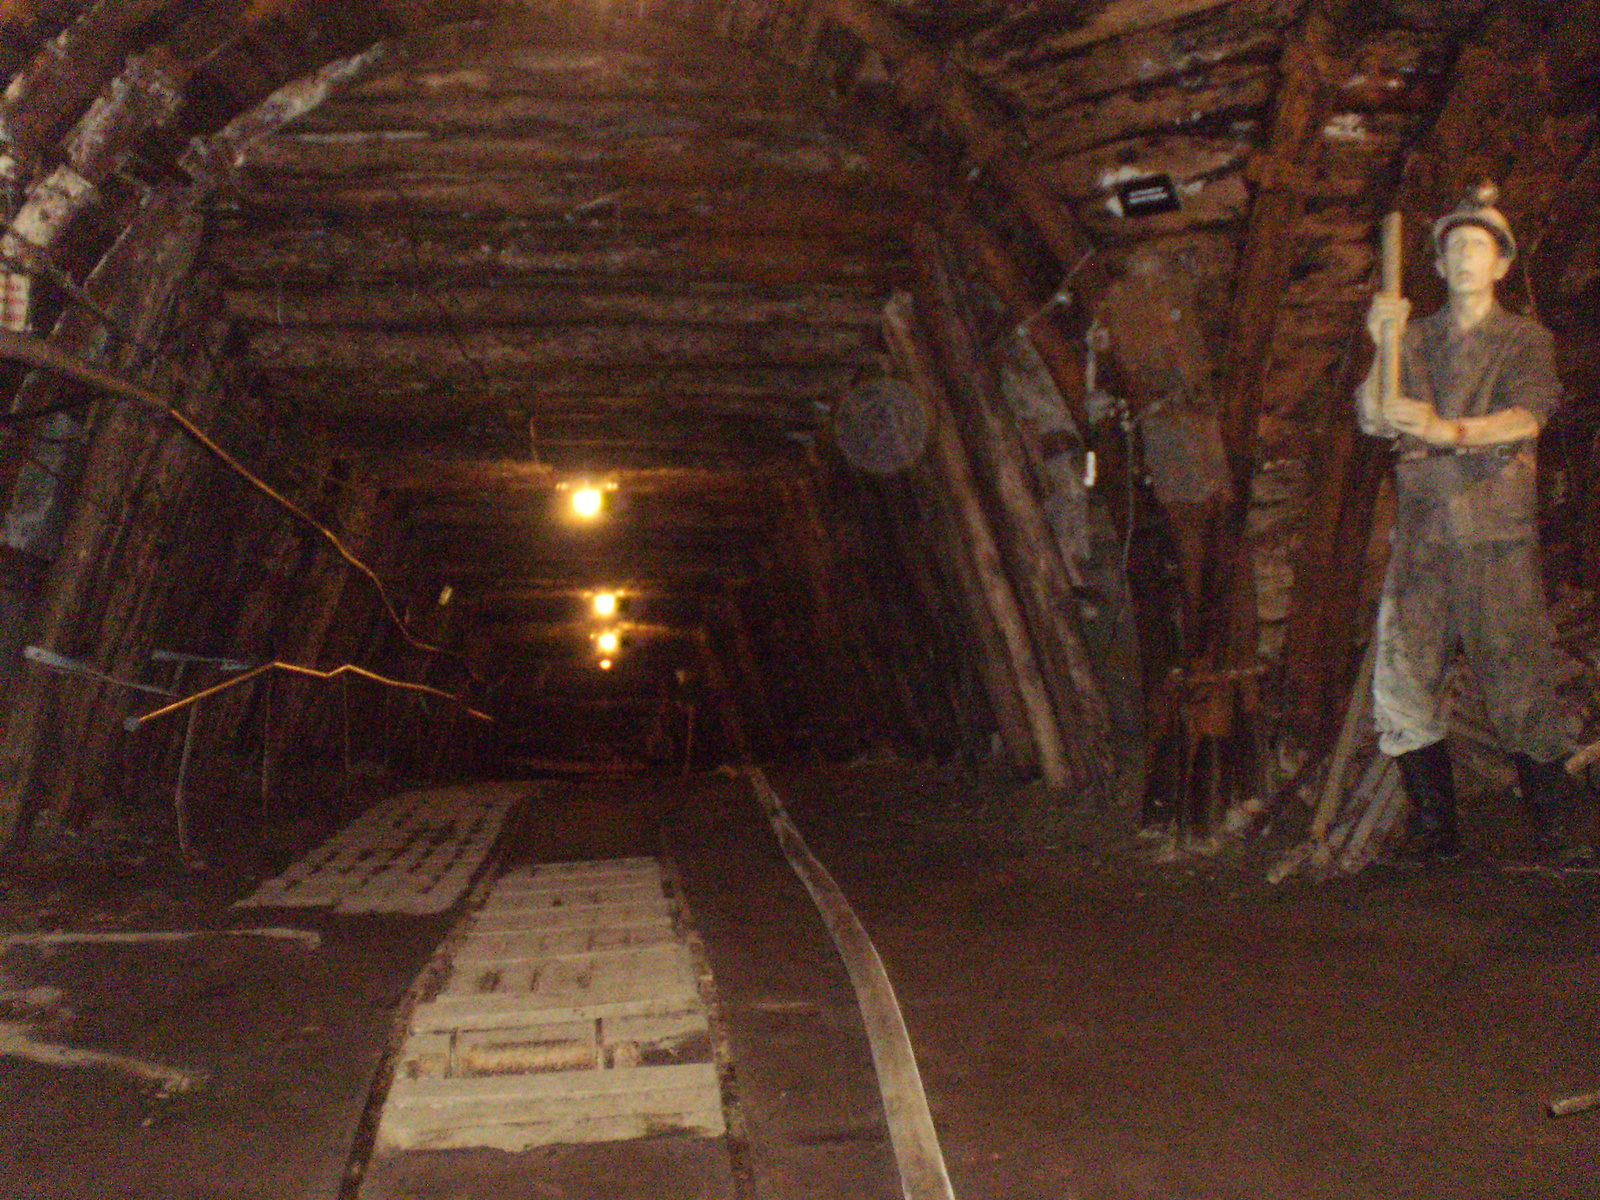 27: a sújtólégbiztos a bánya bejáratának közelében